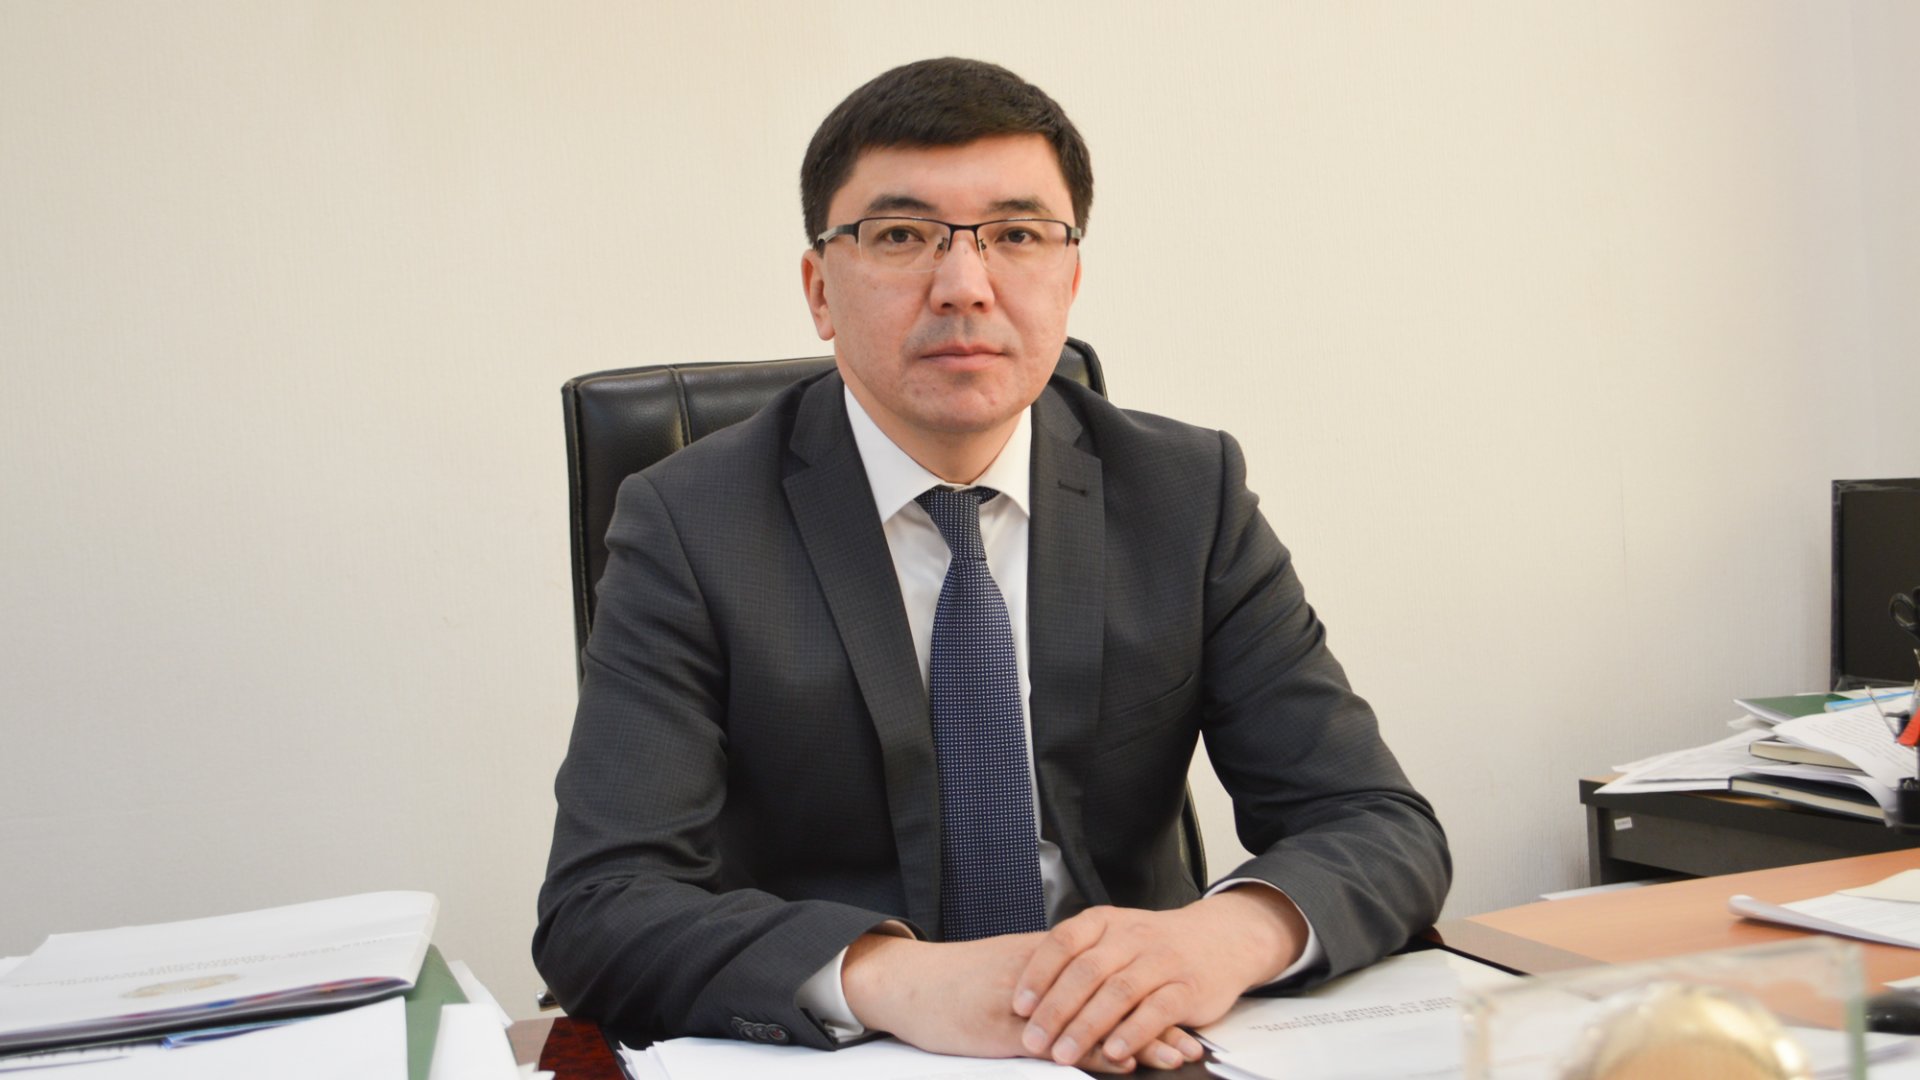 Еңбек және халықты әлеуметтік қорғау бірінші вице-министрі тағайындалды